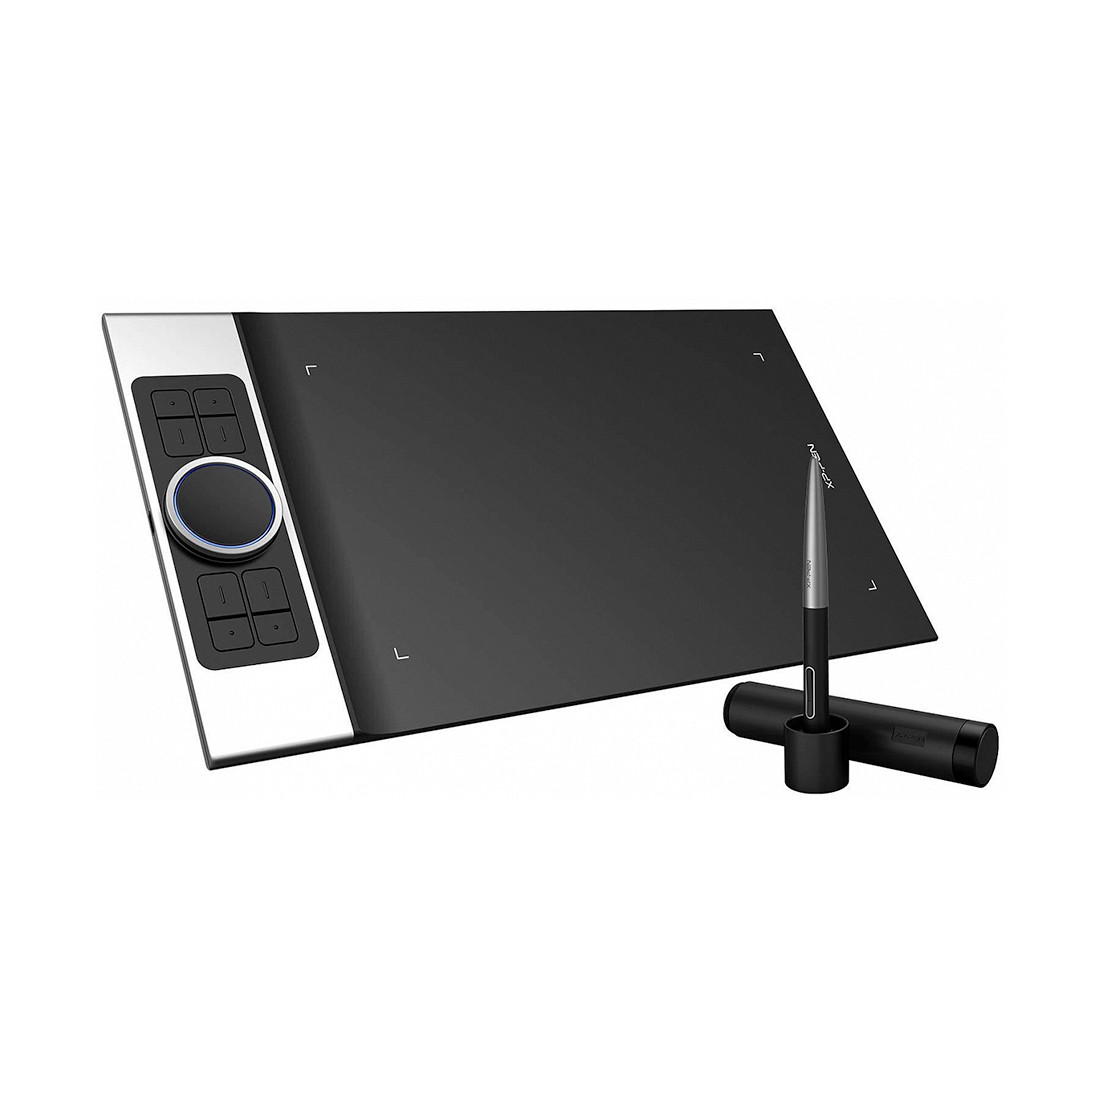 Графический планшет XP-Pen Deco Pro Small, фото 1